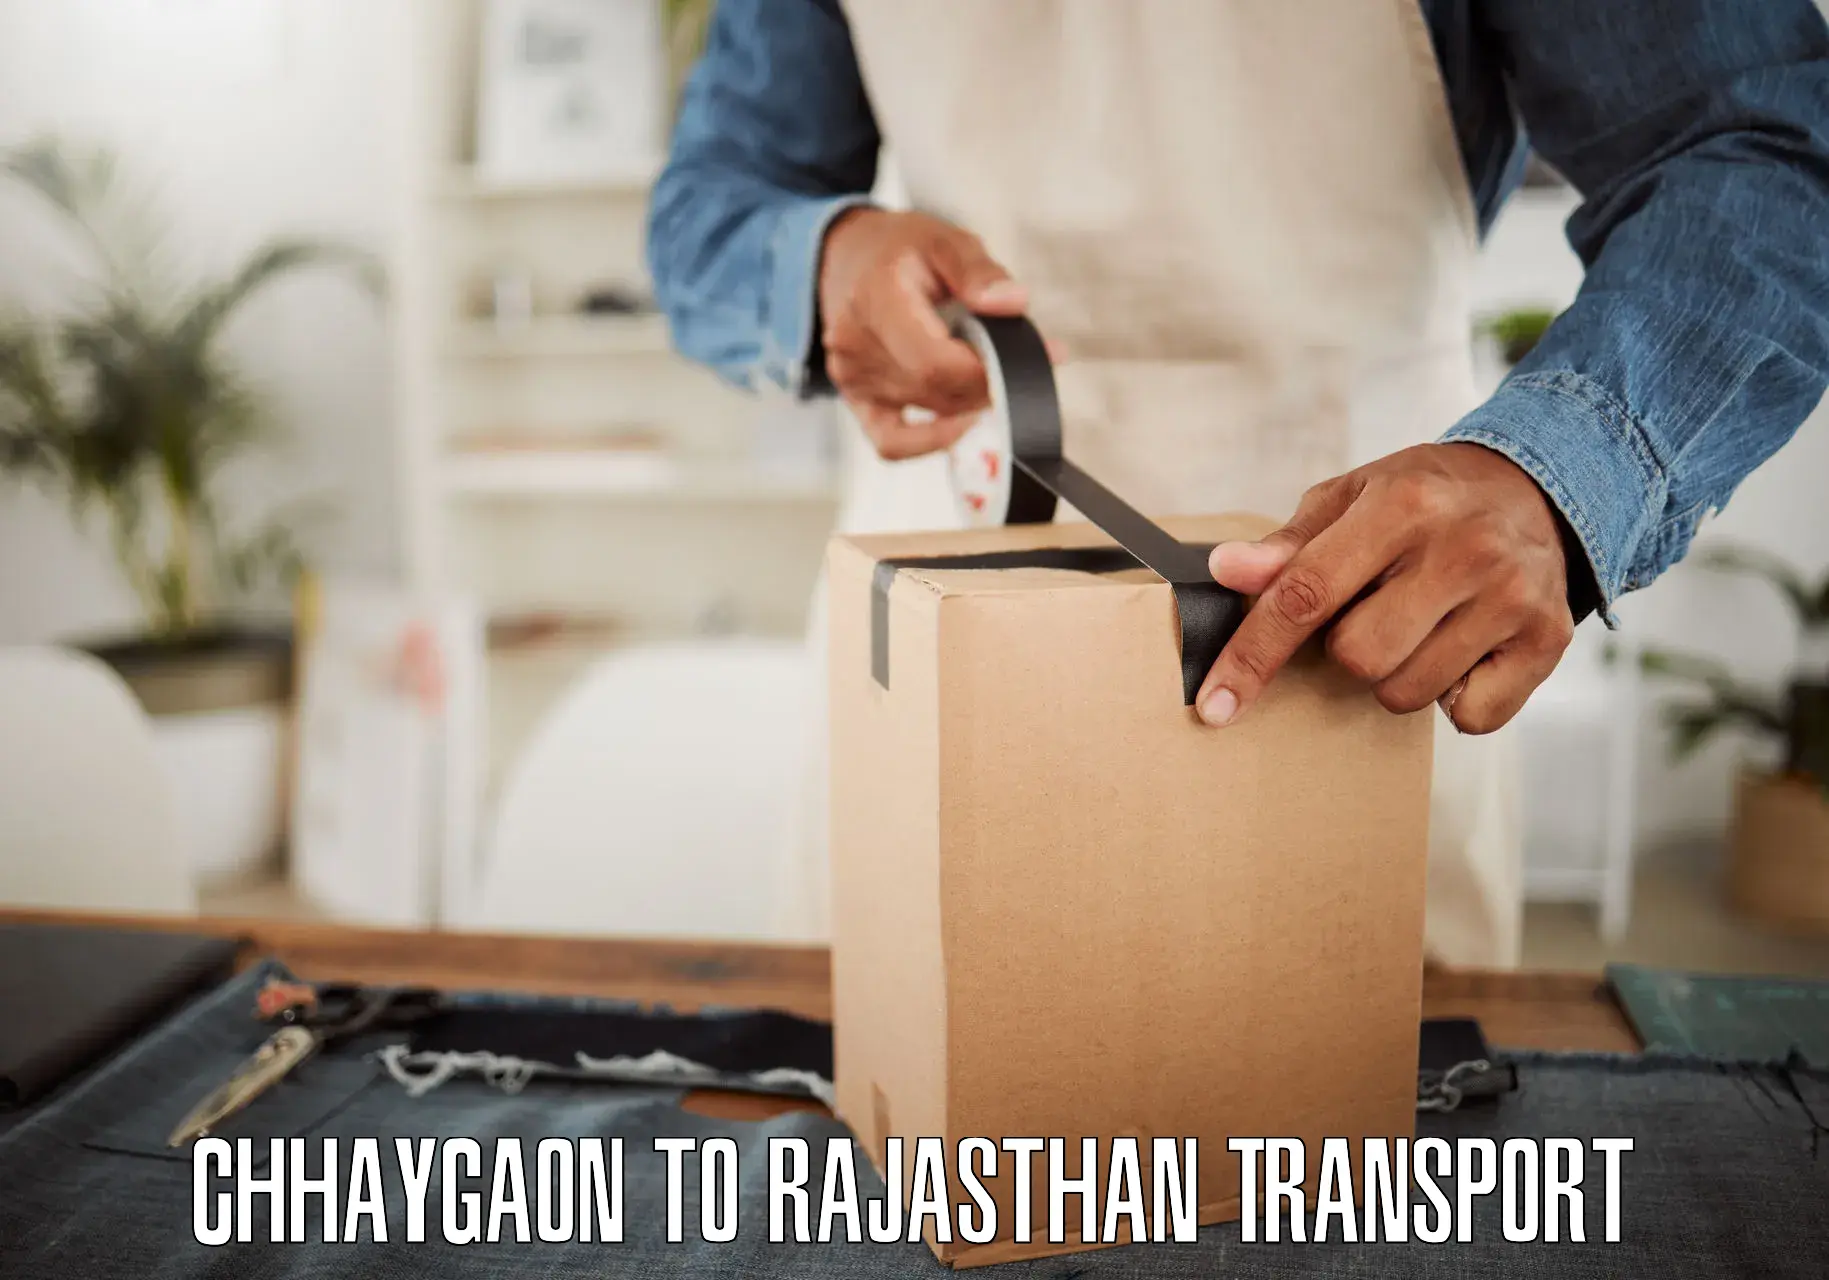 Two wheeler parcel service Chhaygaon to Sagwara